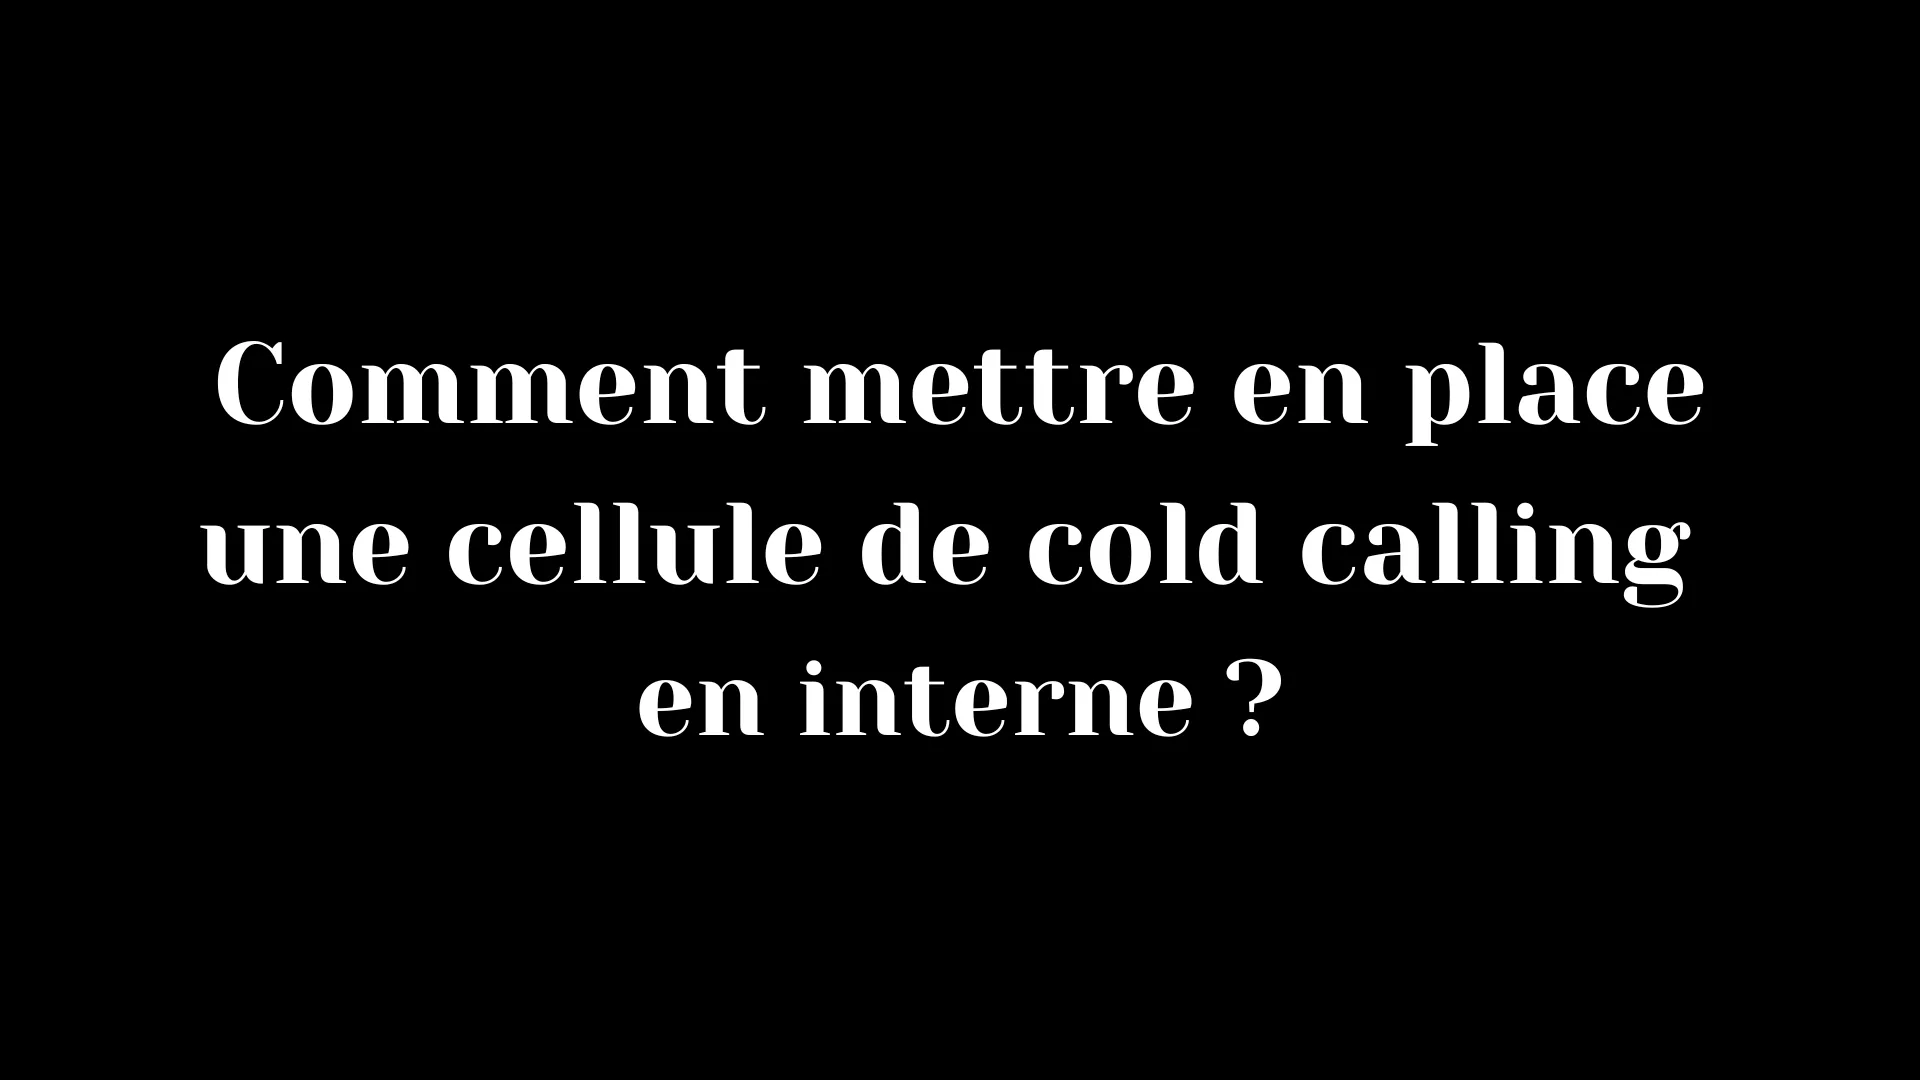 Comment mettre en place une cellule de cold calling en interne ?